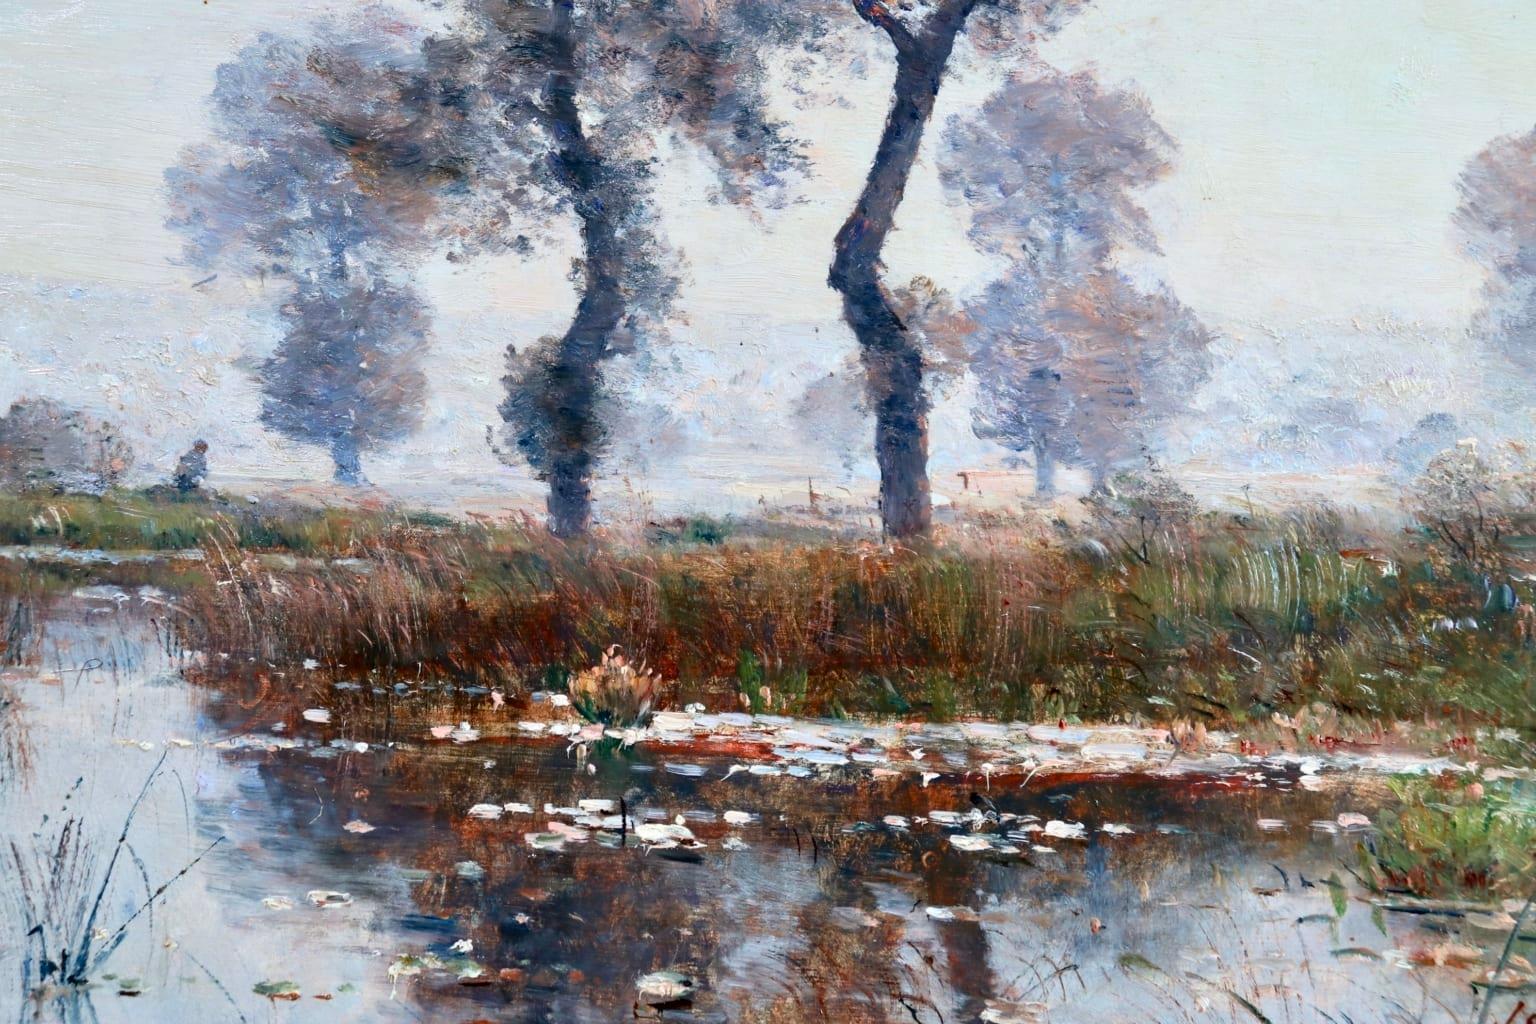 Nympheas on Lake - Saint-Bonnet-les-Oules - Barbizon Landscape Oil by Louis Japy - Barbizon School Painting by Louis Aimé Japy